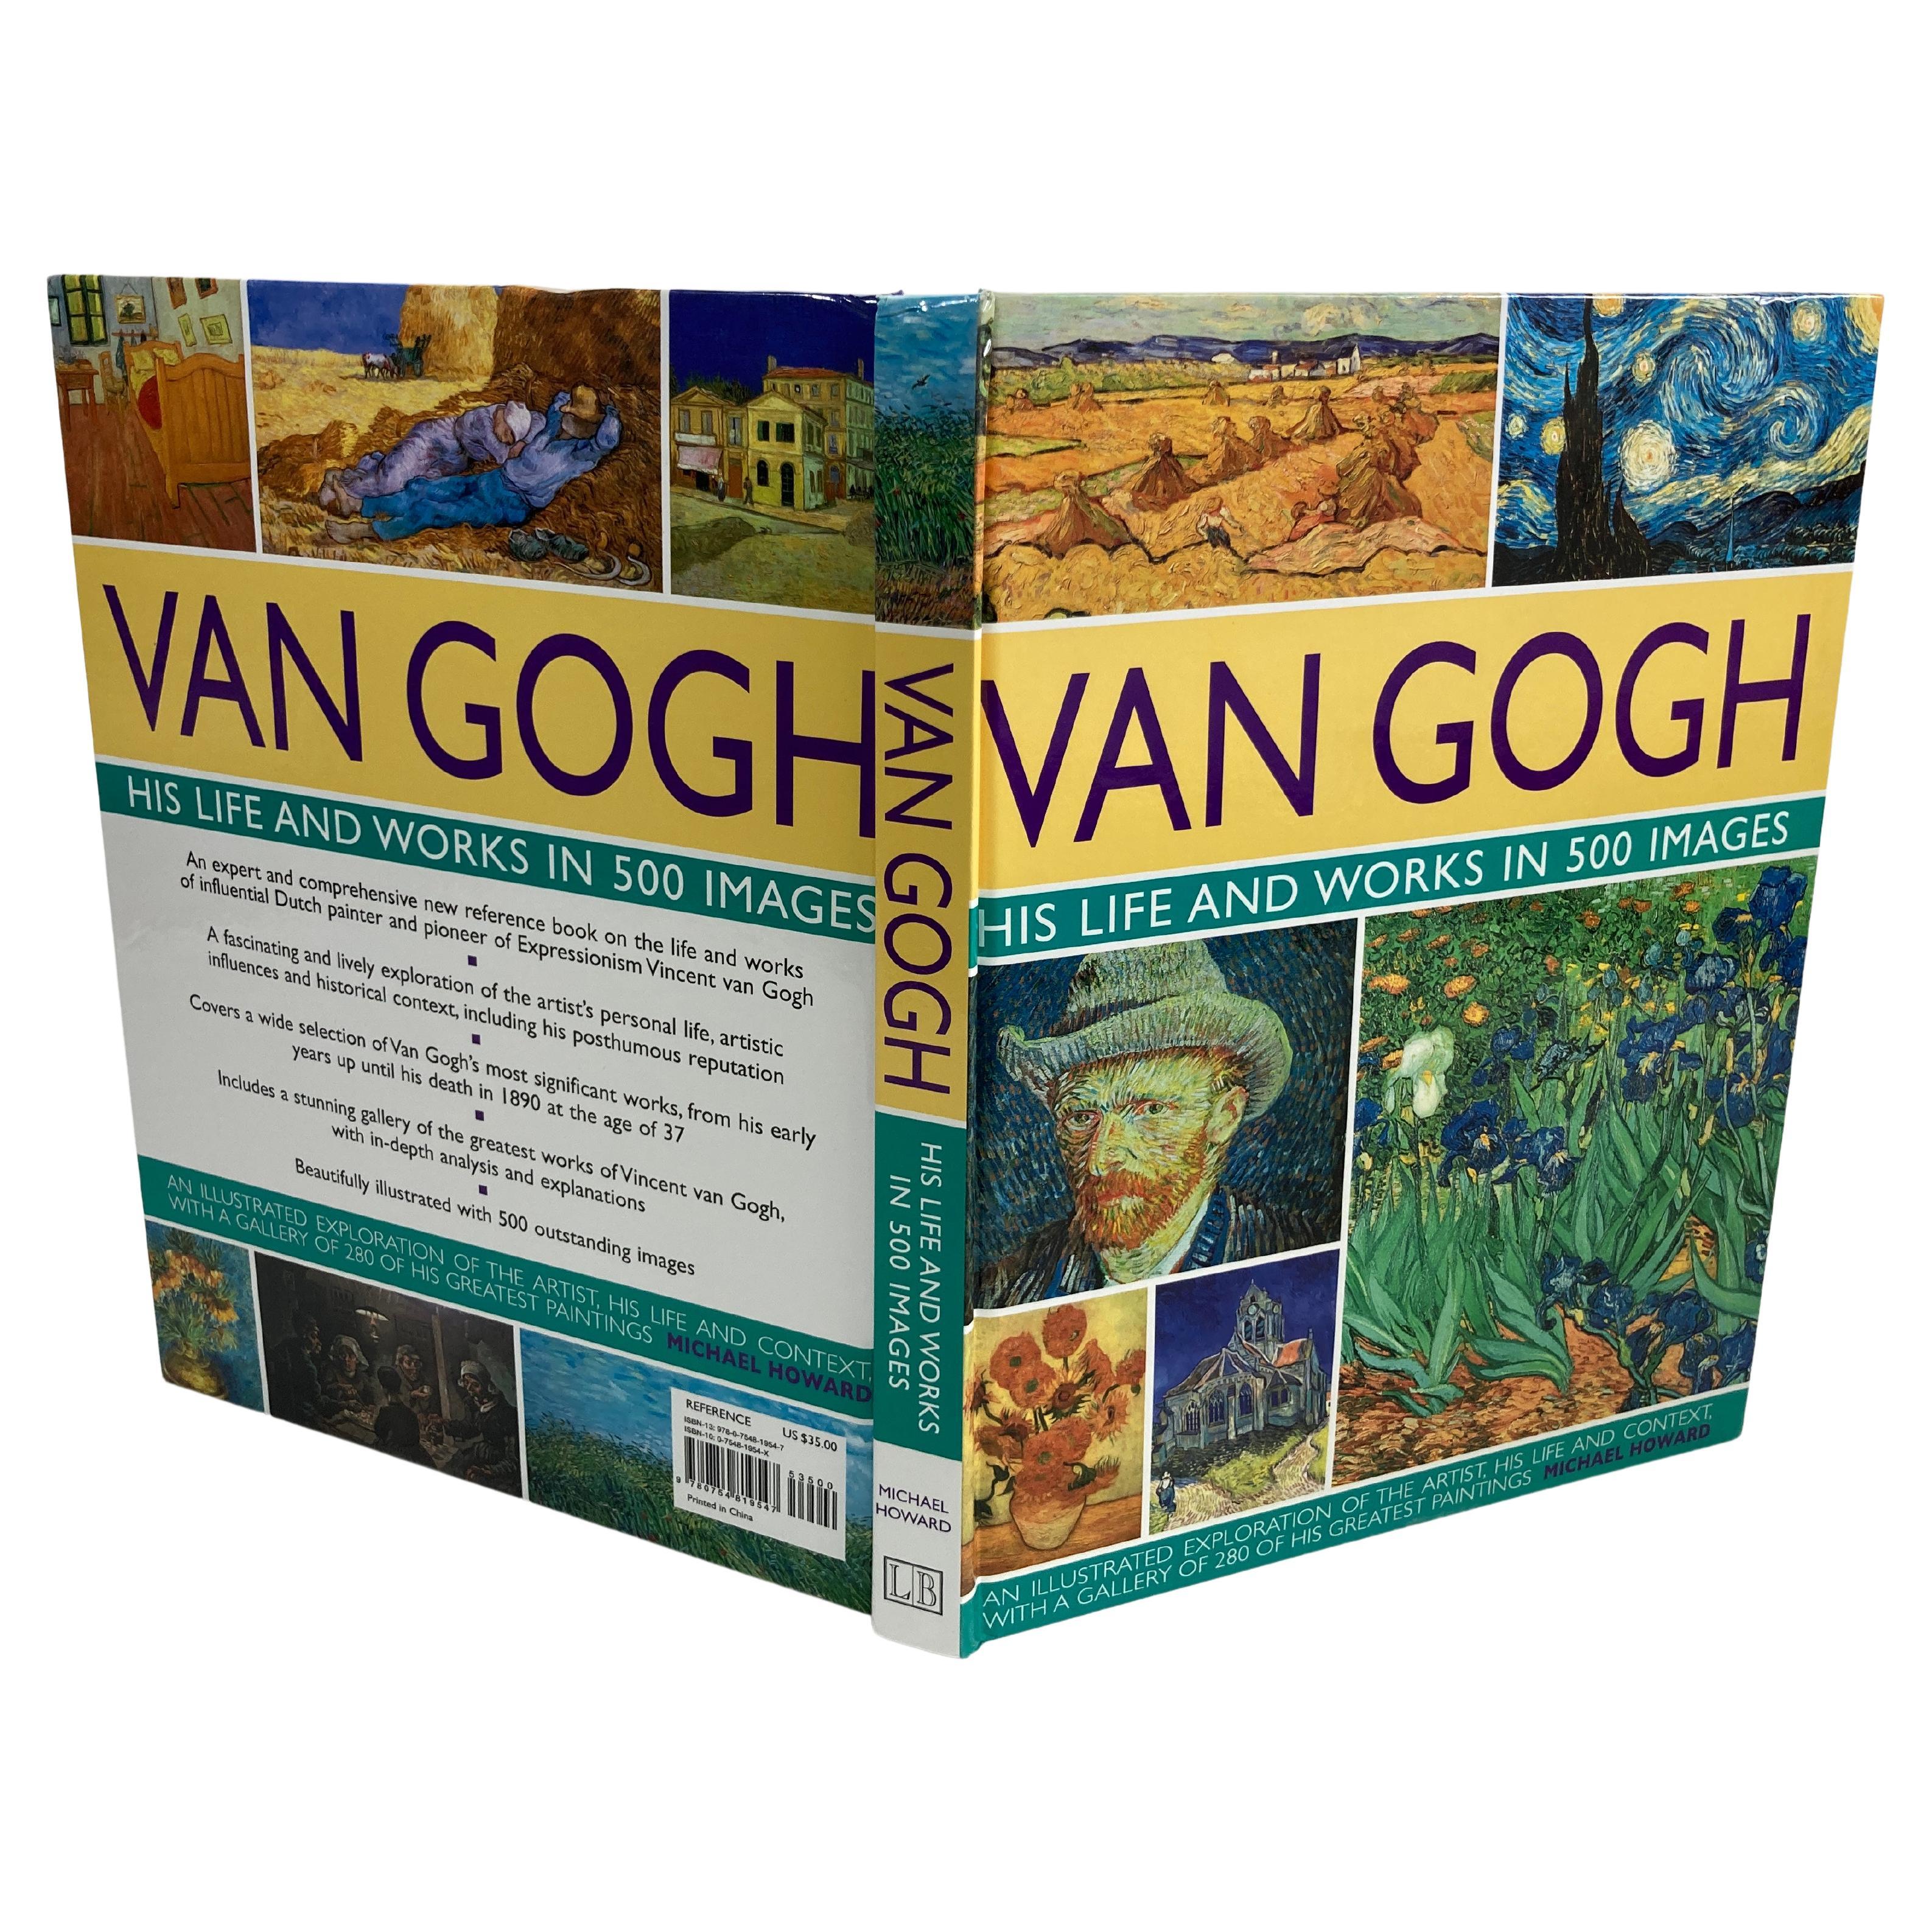 Van Gogh : Sa vie et ses œuvres dans 500 images
Livre de Michael Howard et Vincent van Gogh.
